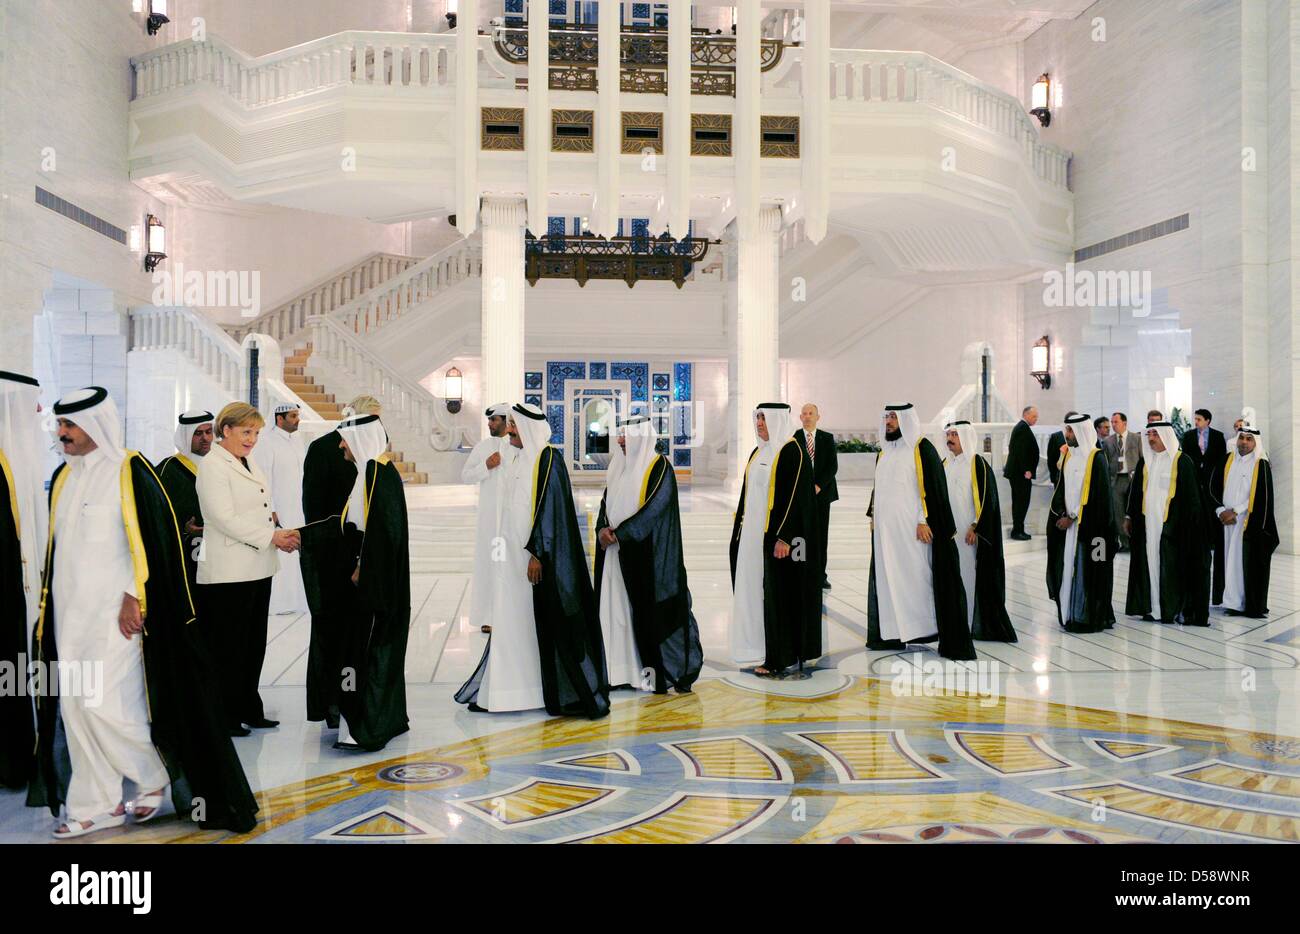 Bundeskanzlerin Angela Merkel (CDU) begrüßt am Mittwoch (26.05.2010) im Palast des Emirs in Doha (Katar) Delegationen des Landes. Bis Donnerstag (27.05.) besucht Merkel vier der sechs Staaten des Golfkooperationsrats (GCC). Ziel des Besuches dieser ölexportierenden Länder ist die Förderung der Wirtschaftsbeziehungen und der politische Austausch. Foto: Rainer Jensen dpa Stock Photo